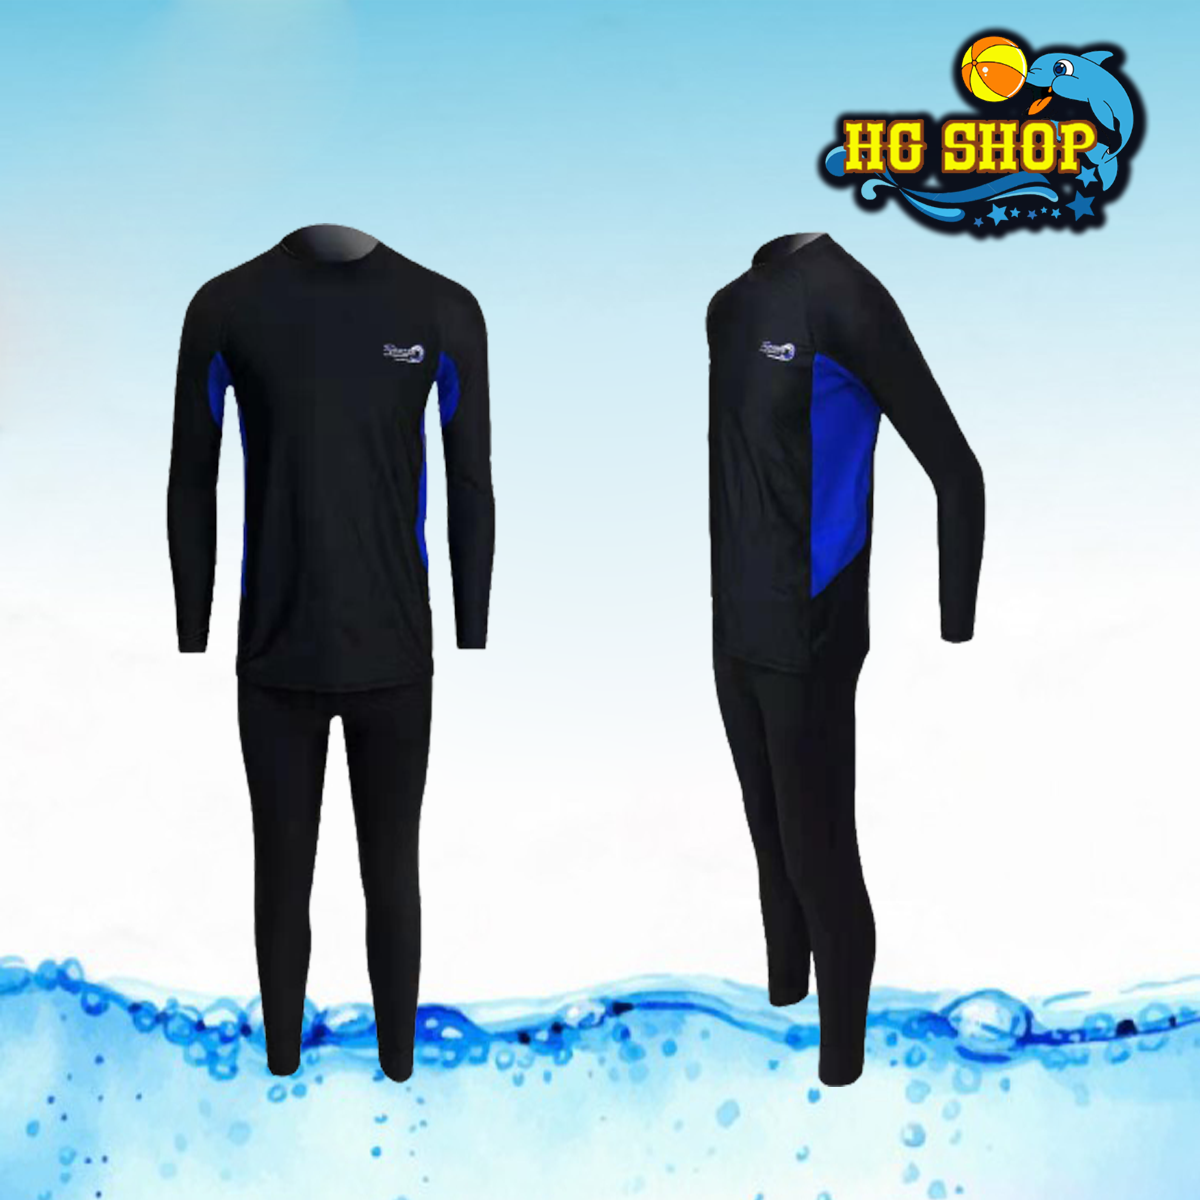 ชุดว่ายน้ำผู้ชาย รุ่น 91014 เซต 2 ชิ้น เสื้อแขนยาว+กางเกงขายาว